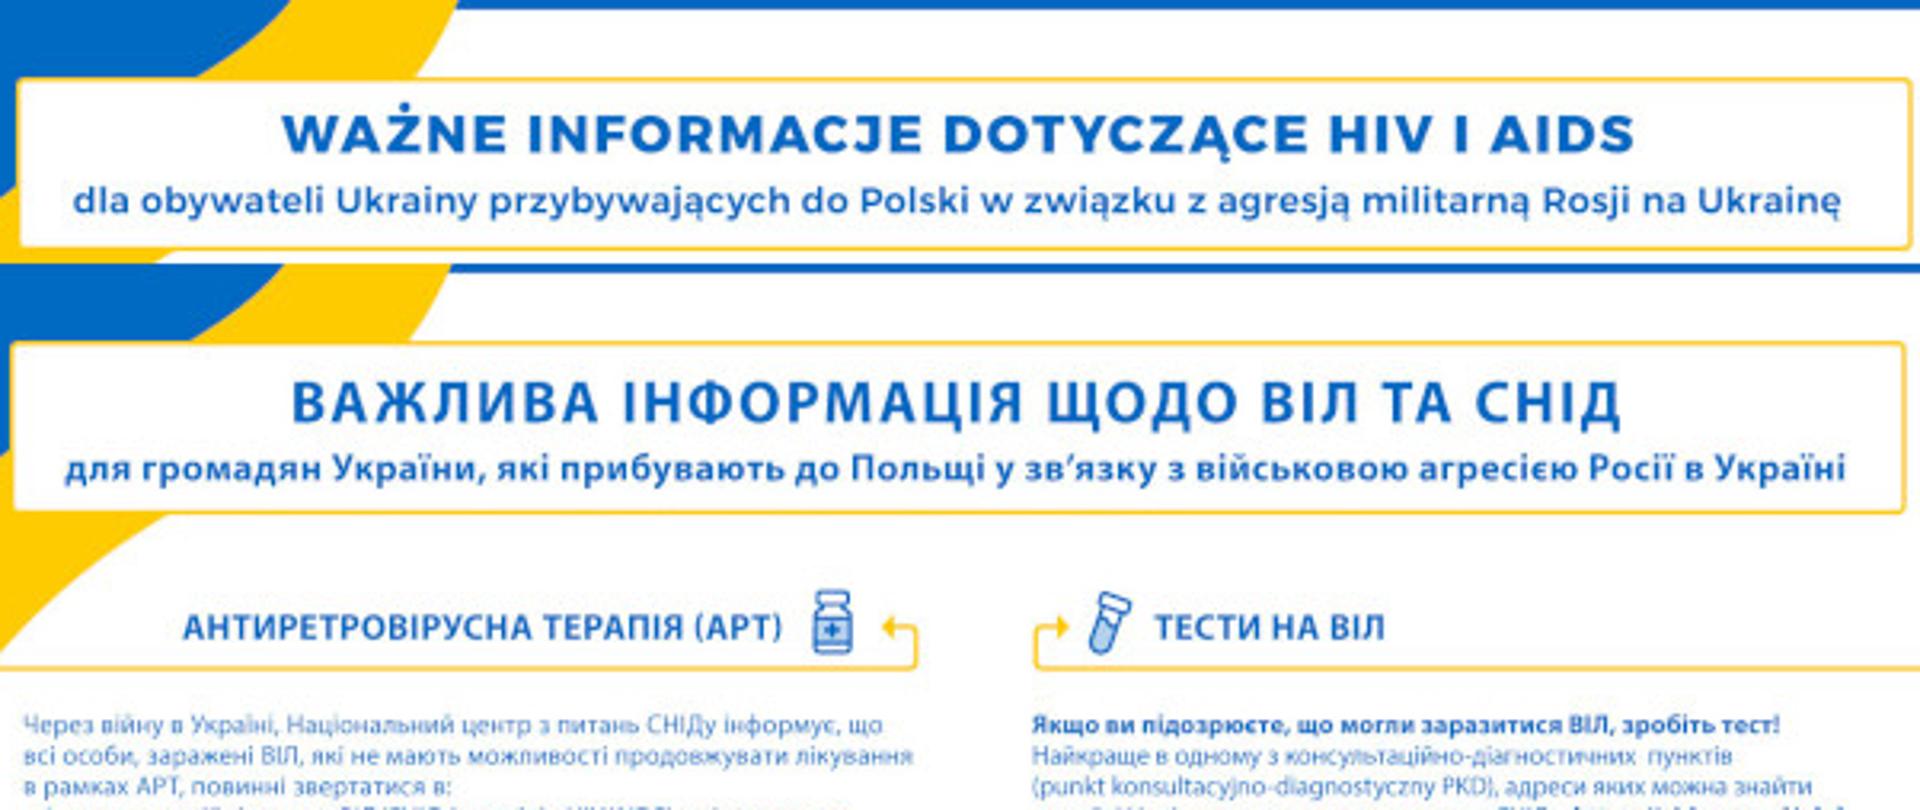 HIV dla obywateli Ukrainy ulotka - baner